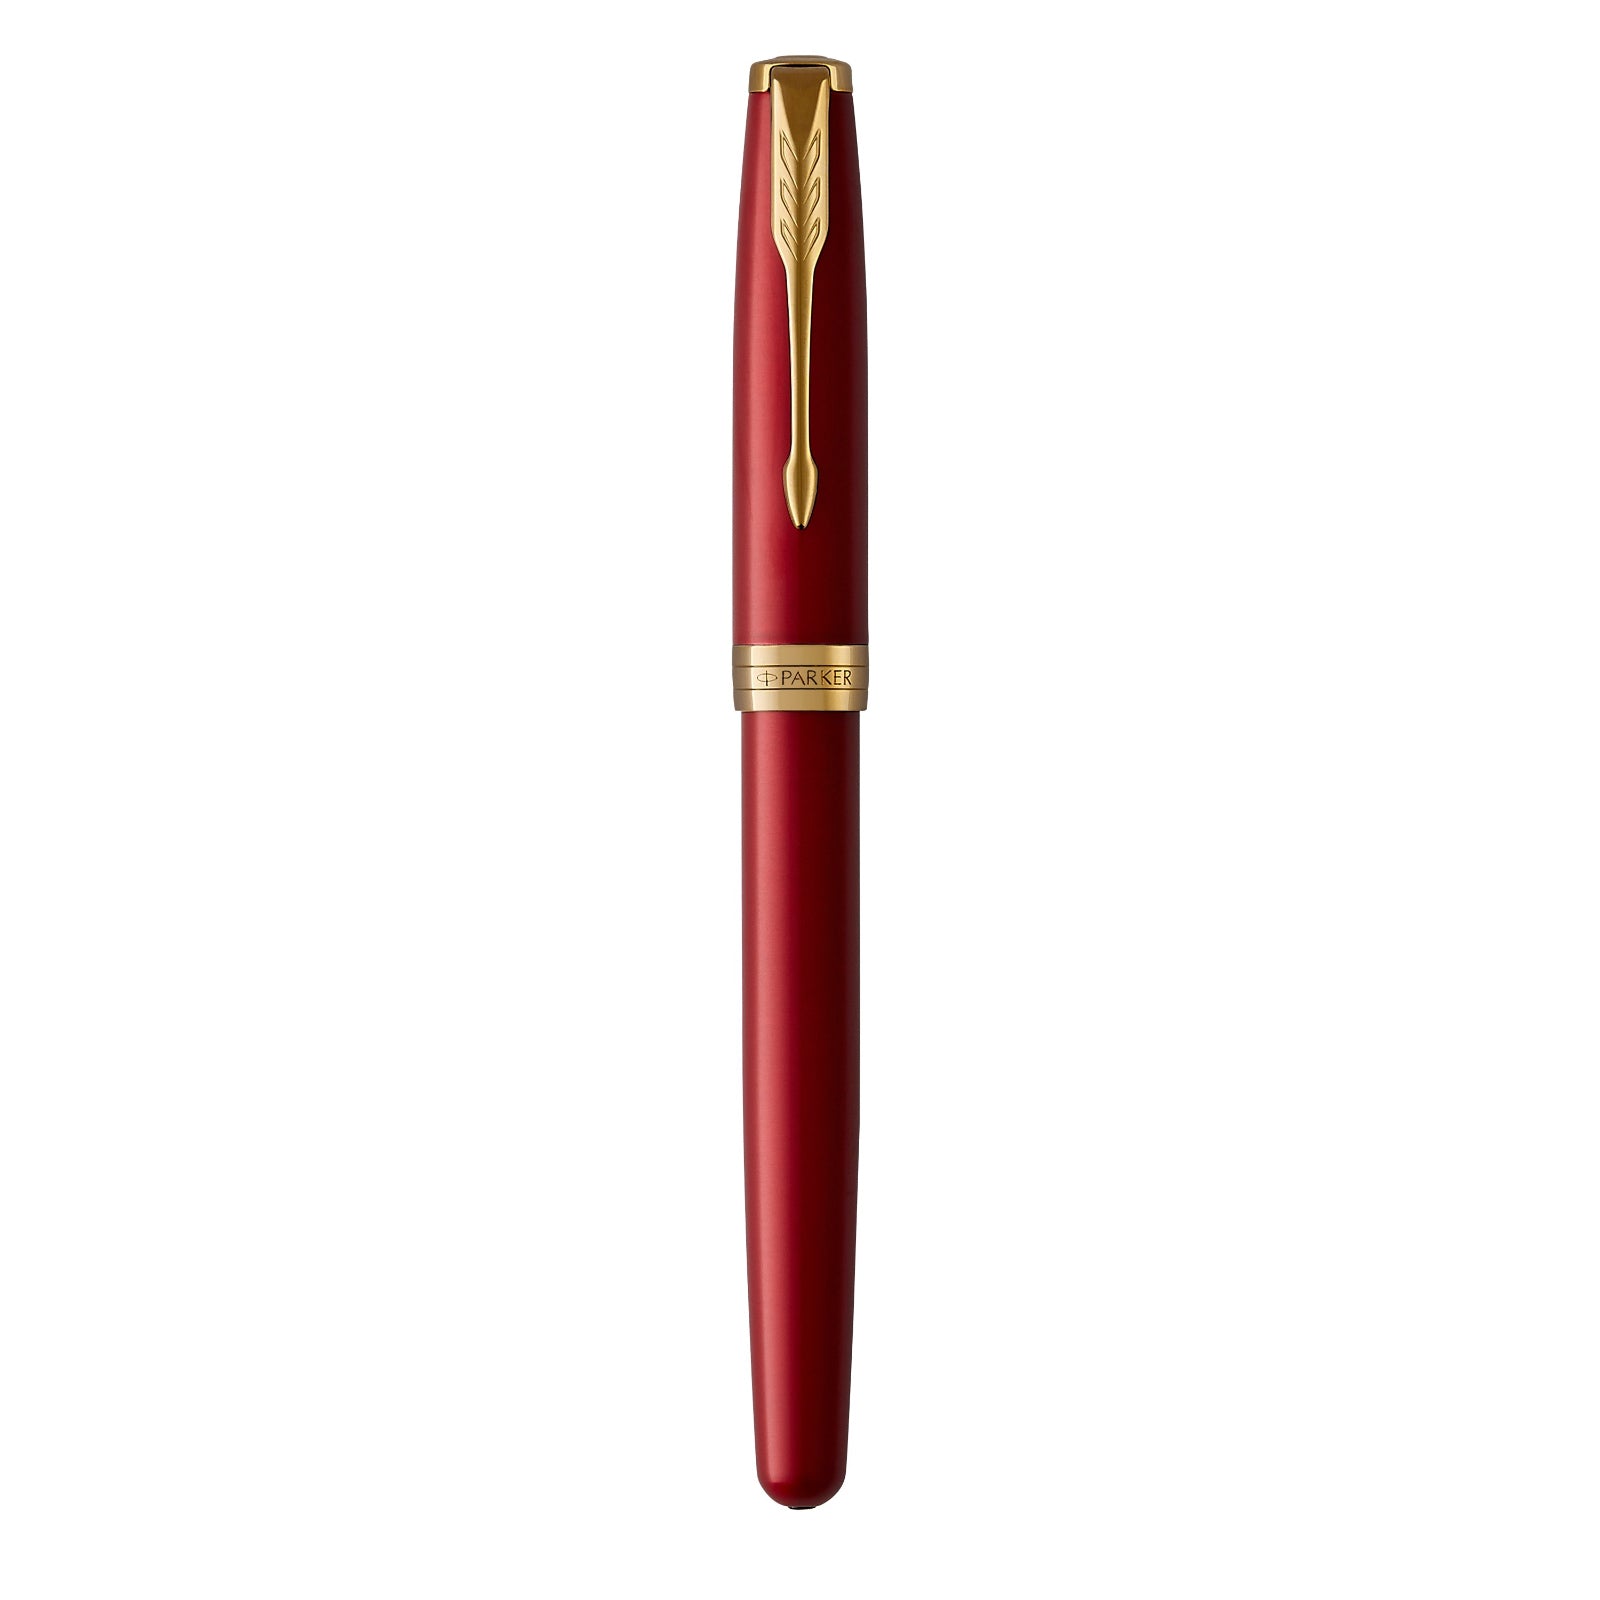 Parker Sonnet Red Lacquer Gold Trim Fountain Pen - Pencraft the boutique